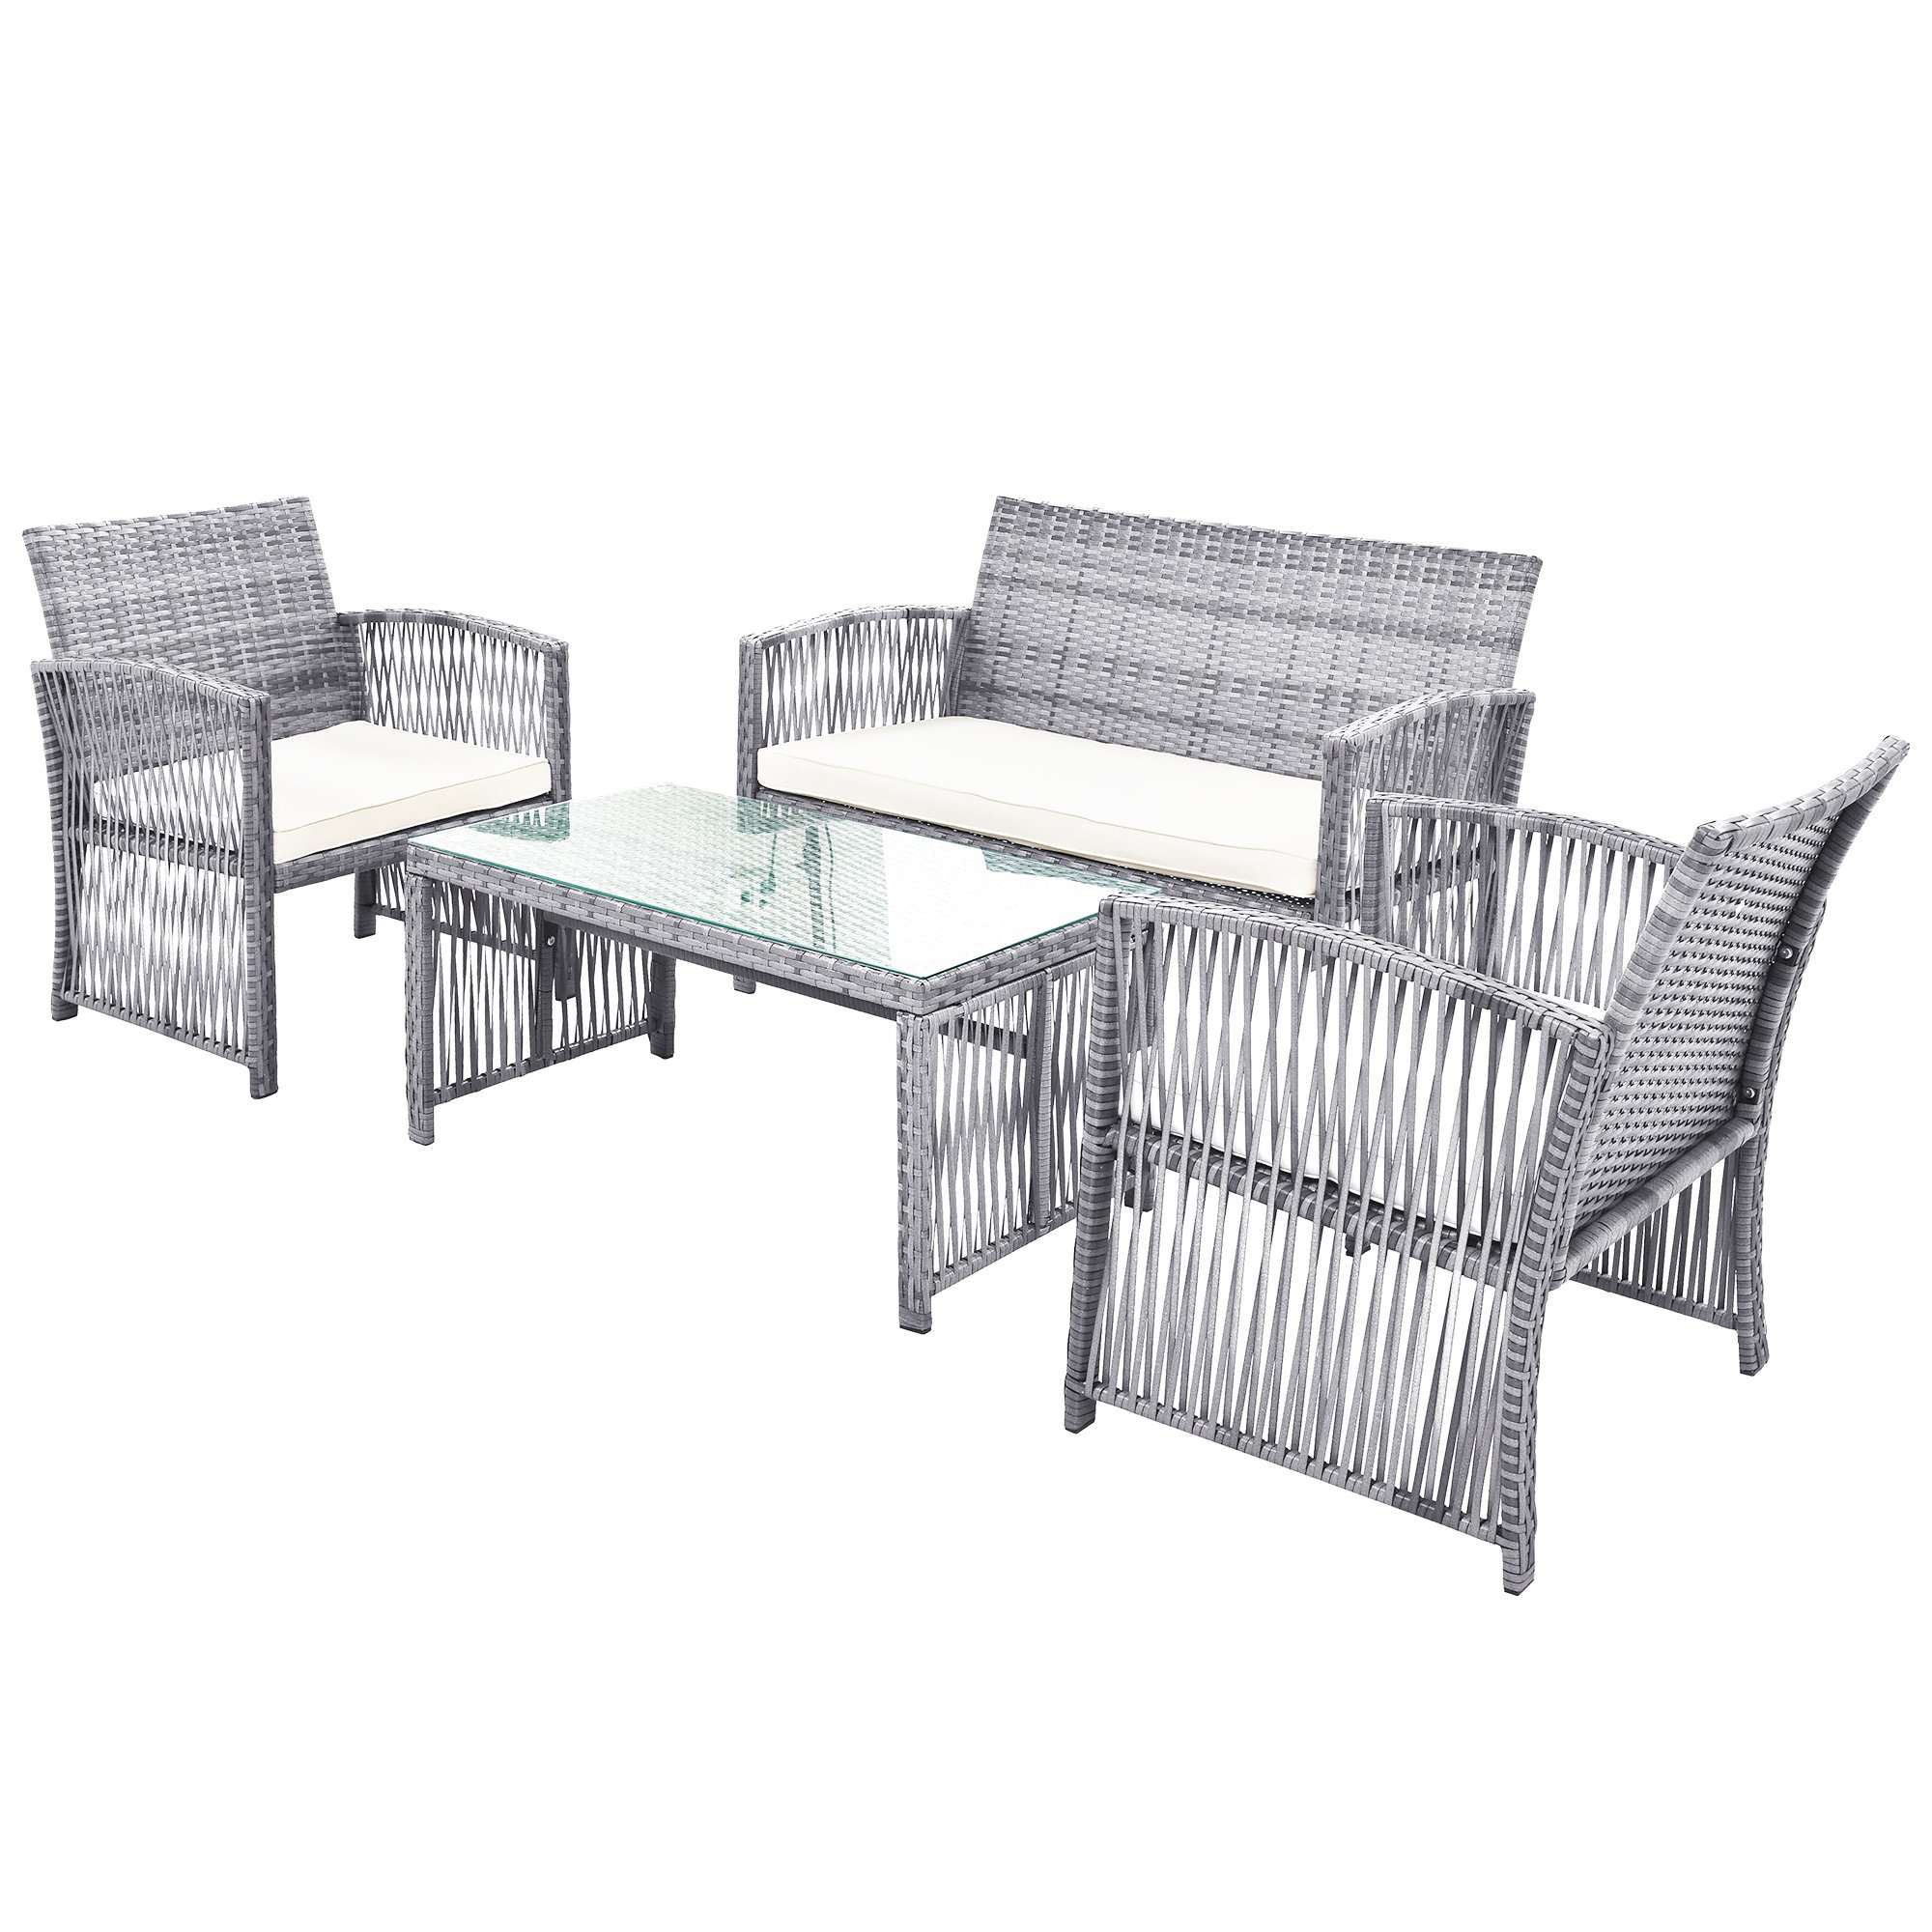 4 Pieces Outdoor Furniture Rattan Chair & Table Patio Set Outdoor Sofa for Garden, Backyard,Porch and Poolside, Gray-CASAINC